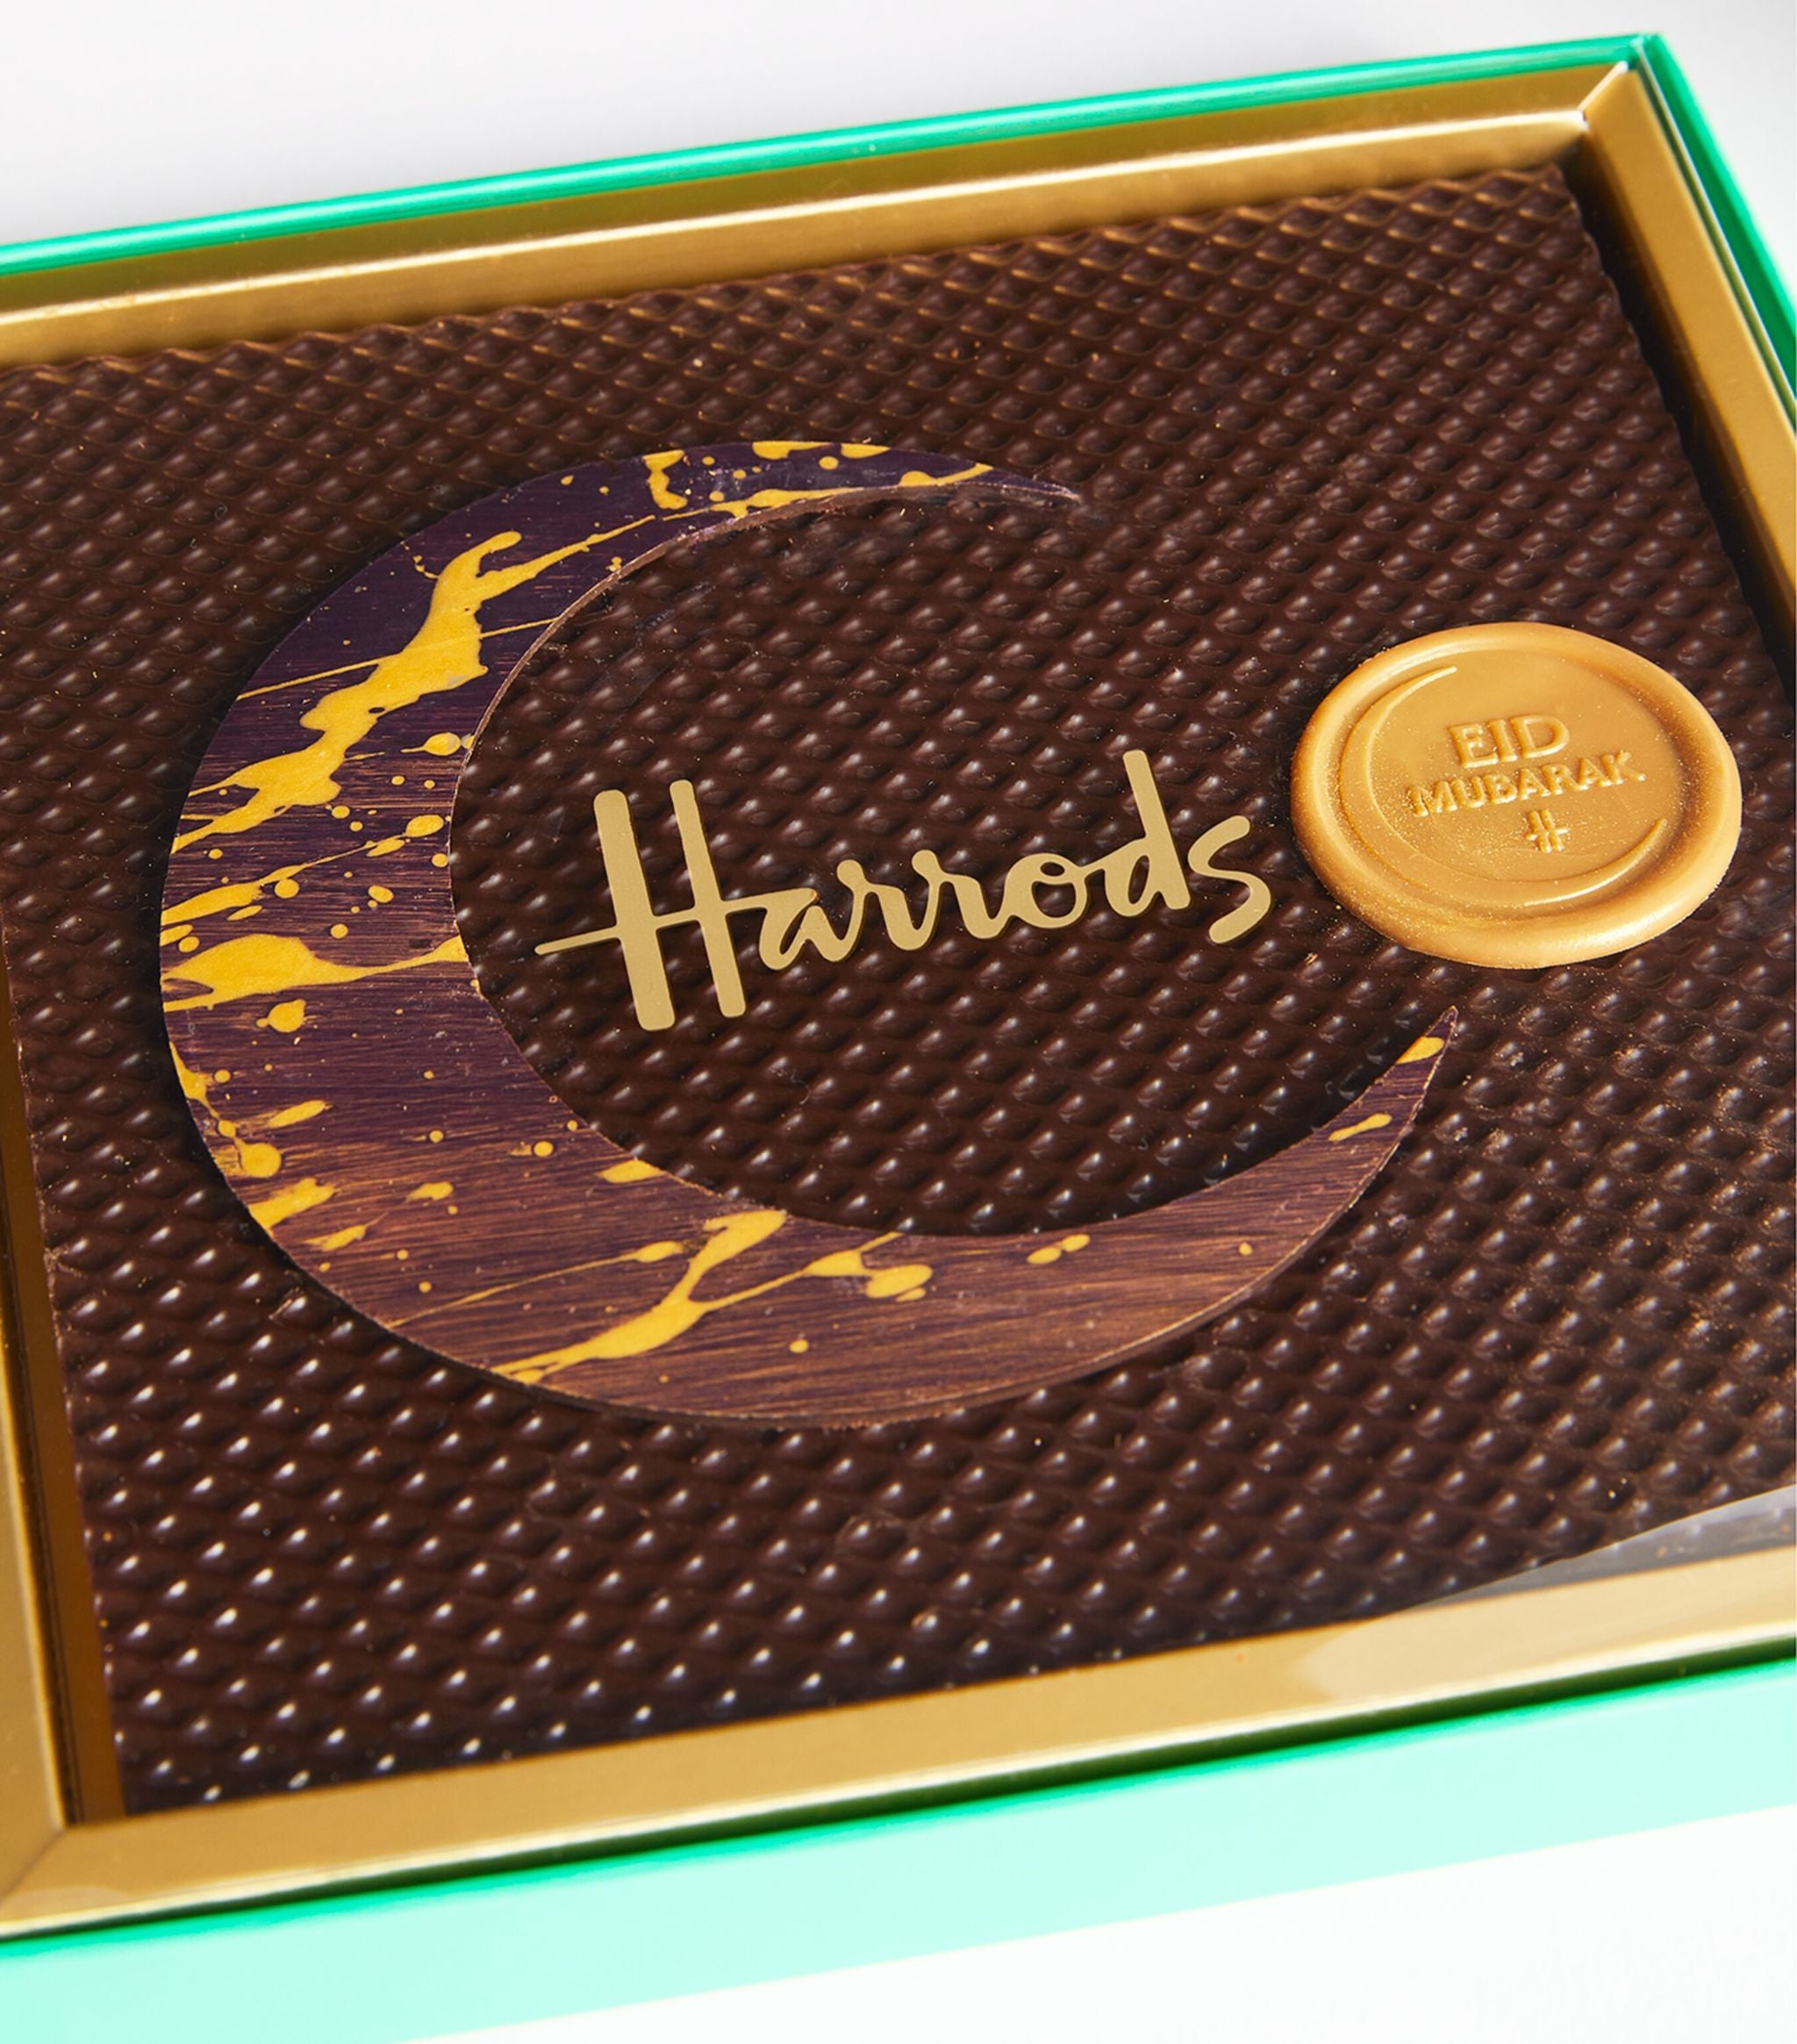 Harrods Gold Bar (300G)